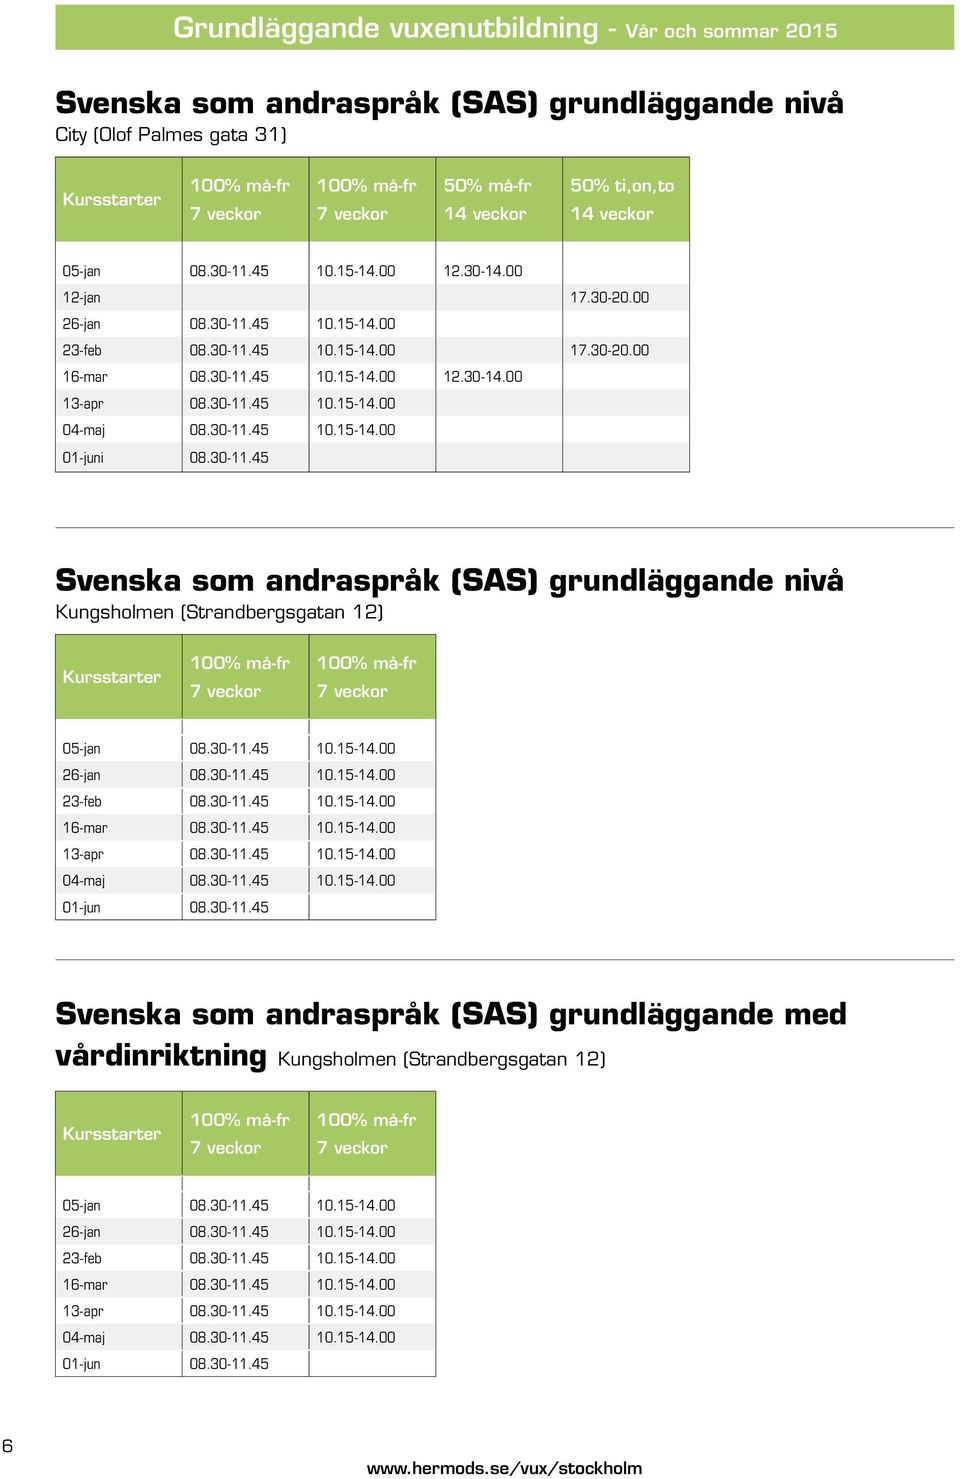 30-11.45 10.15-14.00 04-maj 08.30-11.45 10.15-14.00 01-juni 08.30-11.45 Svenska som andraspråk (SAS) grundläggande nivå Kungsholmen (Strandbergsgatan 12) Kursstarter 100% må-fr 7 veckor 100% må-fr 7 veckor 05-jan 08.